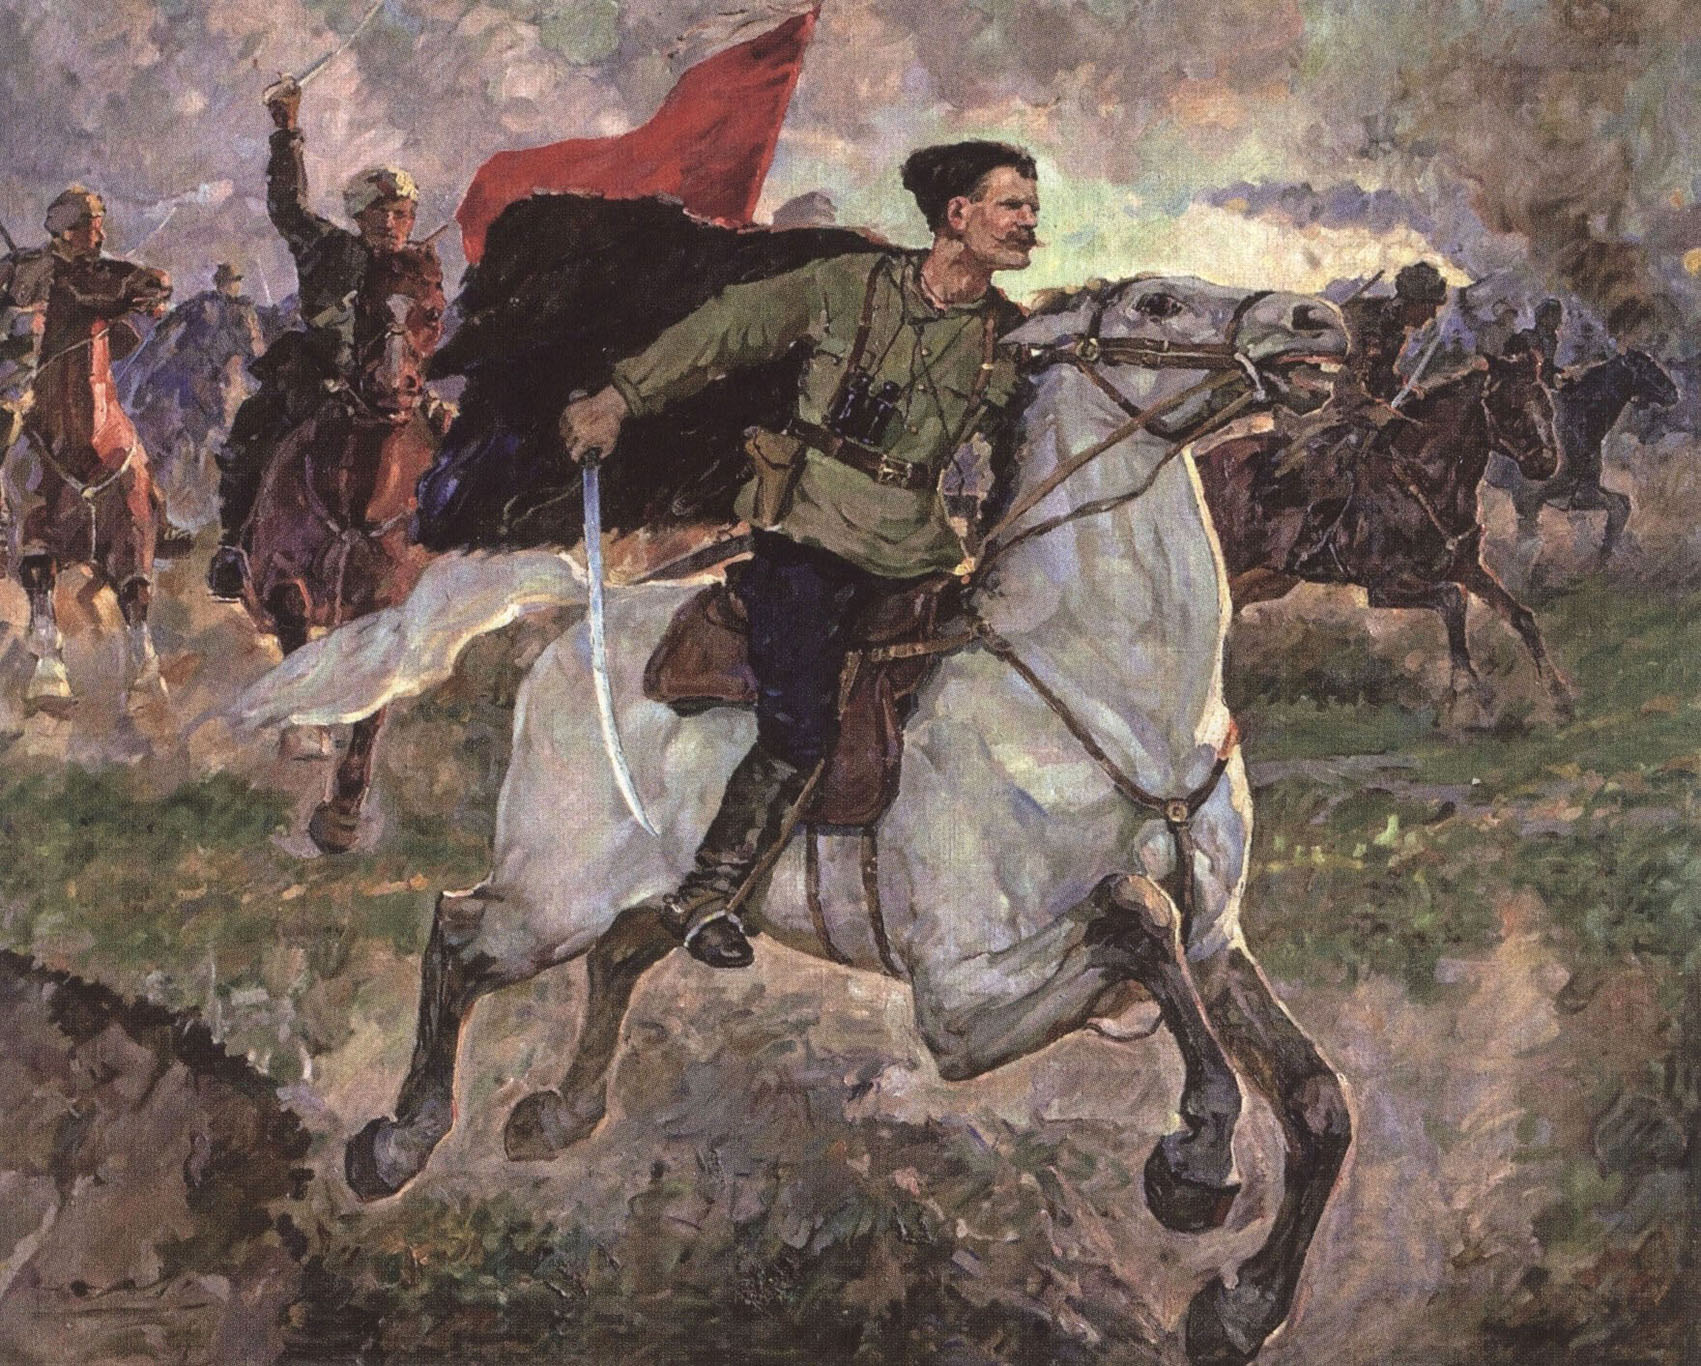 Пётр Васильев. "Чапаев в бою". 1934.